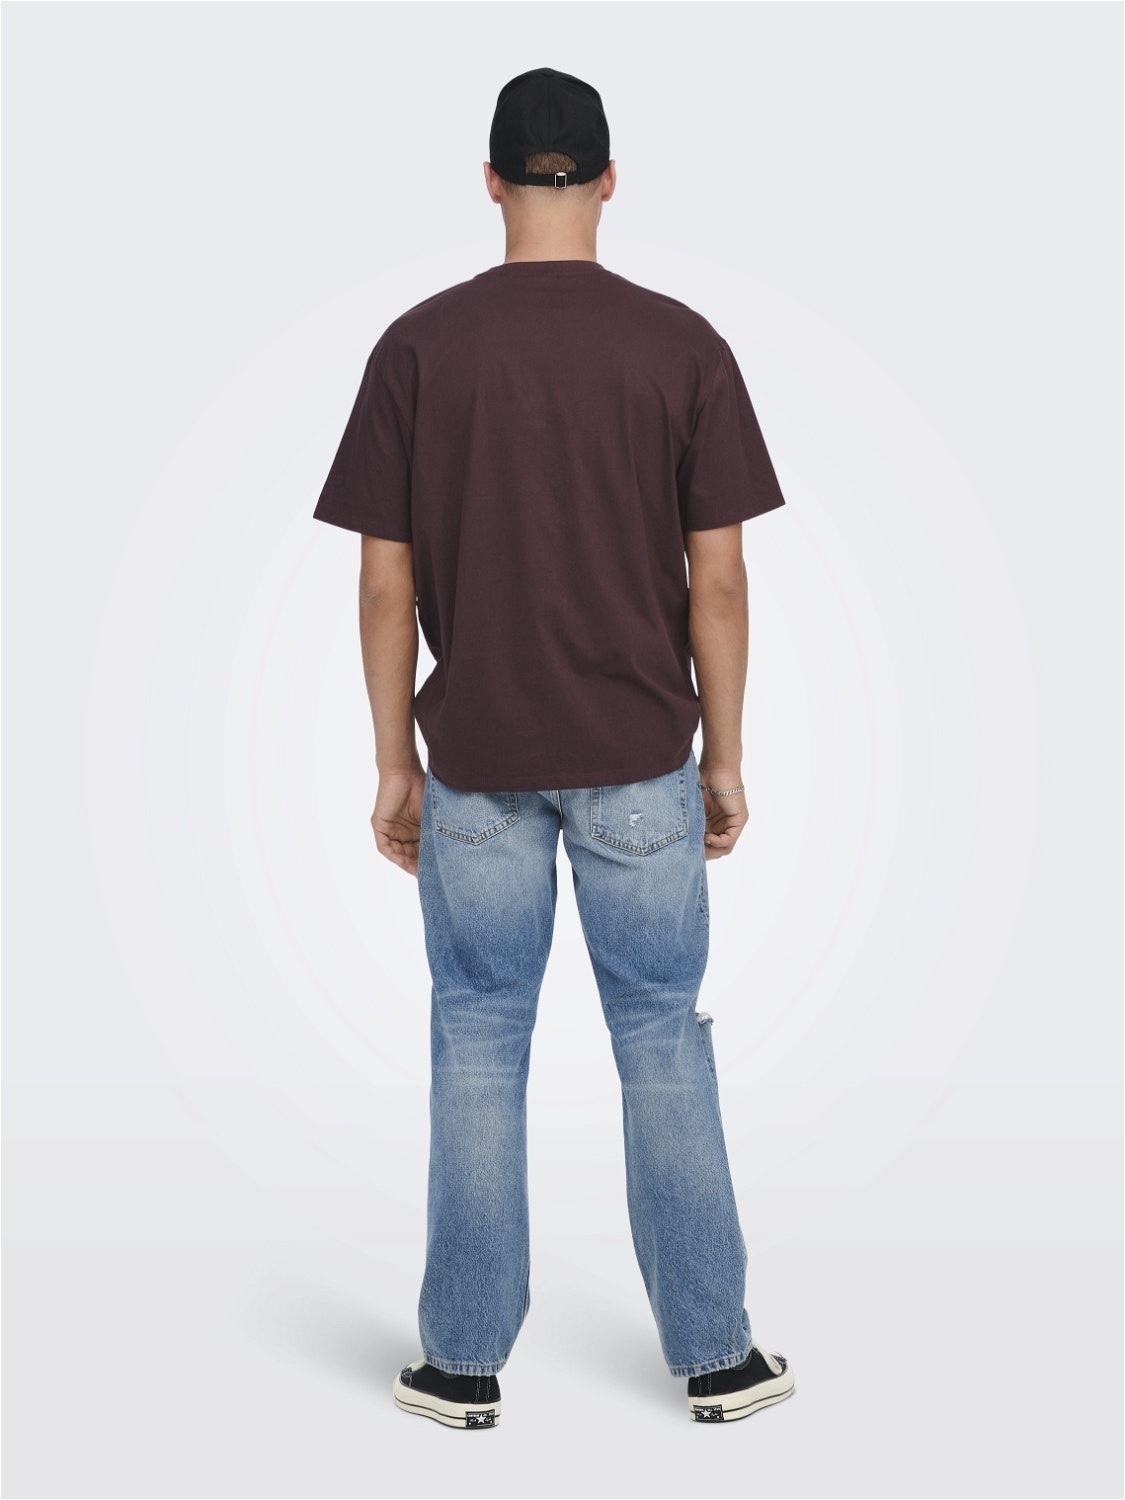 ONLY & SONS Locker geschnitten Rundhals T-Shirt -Fudge - 22022532